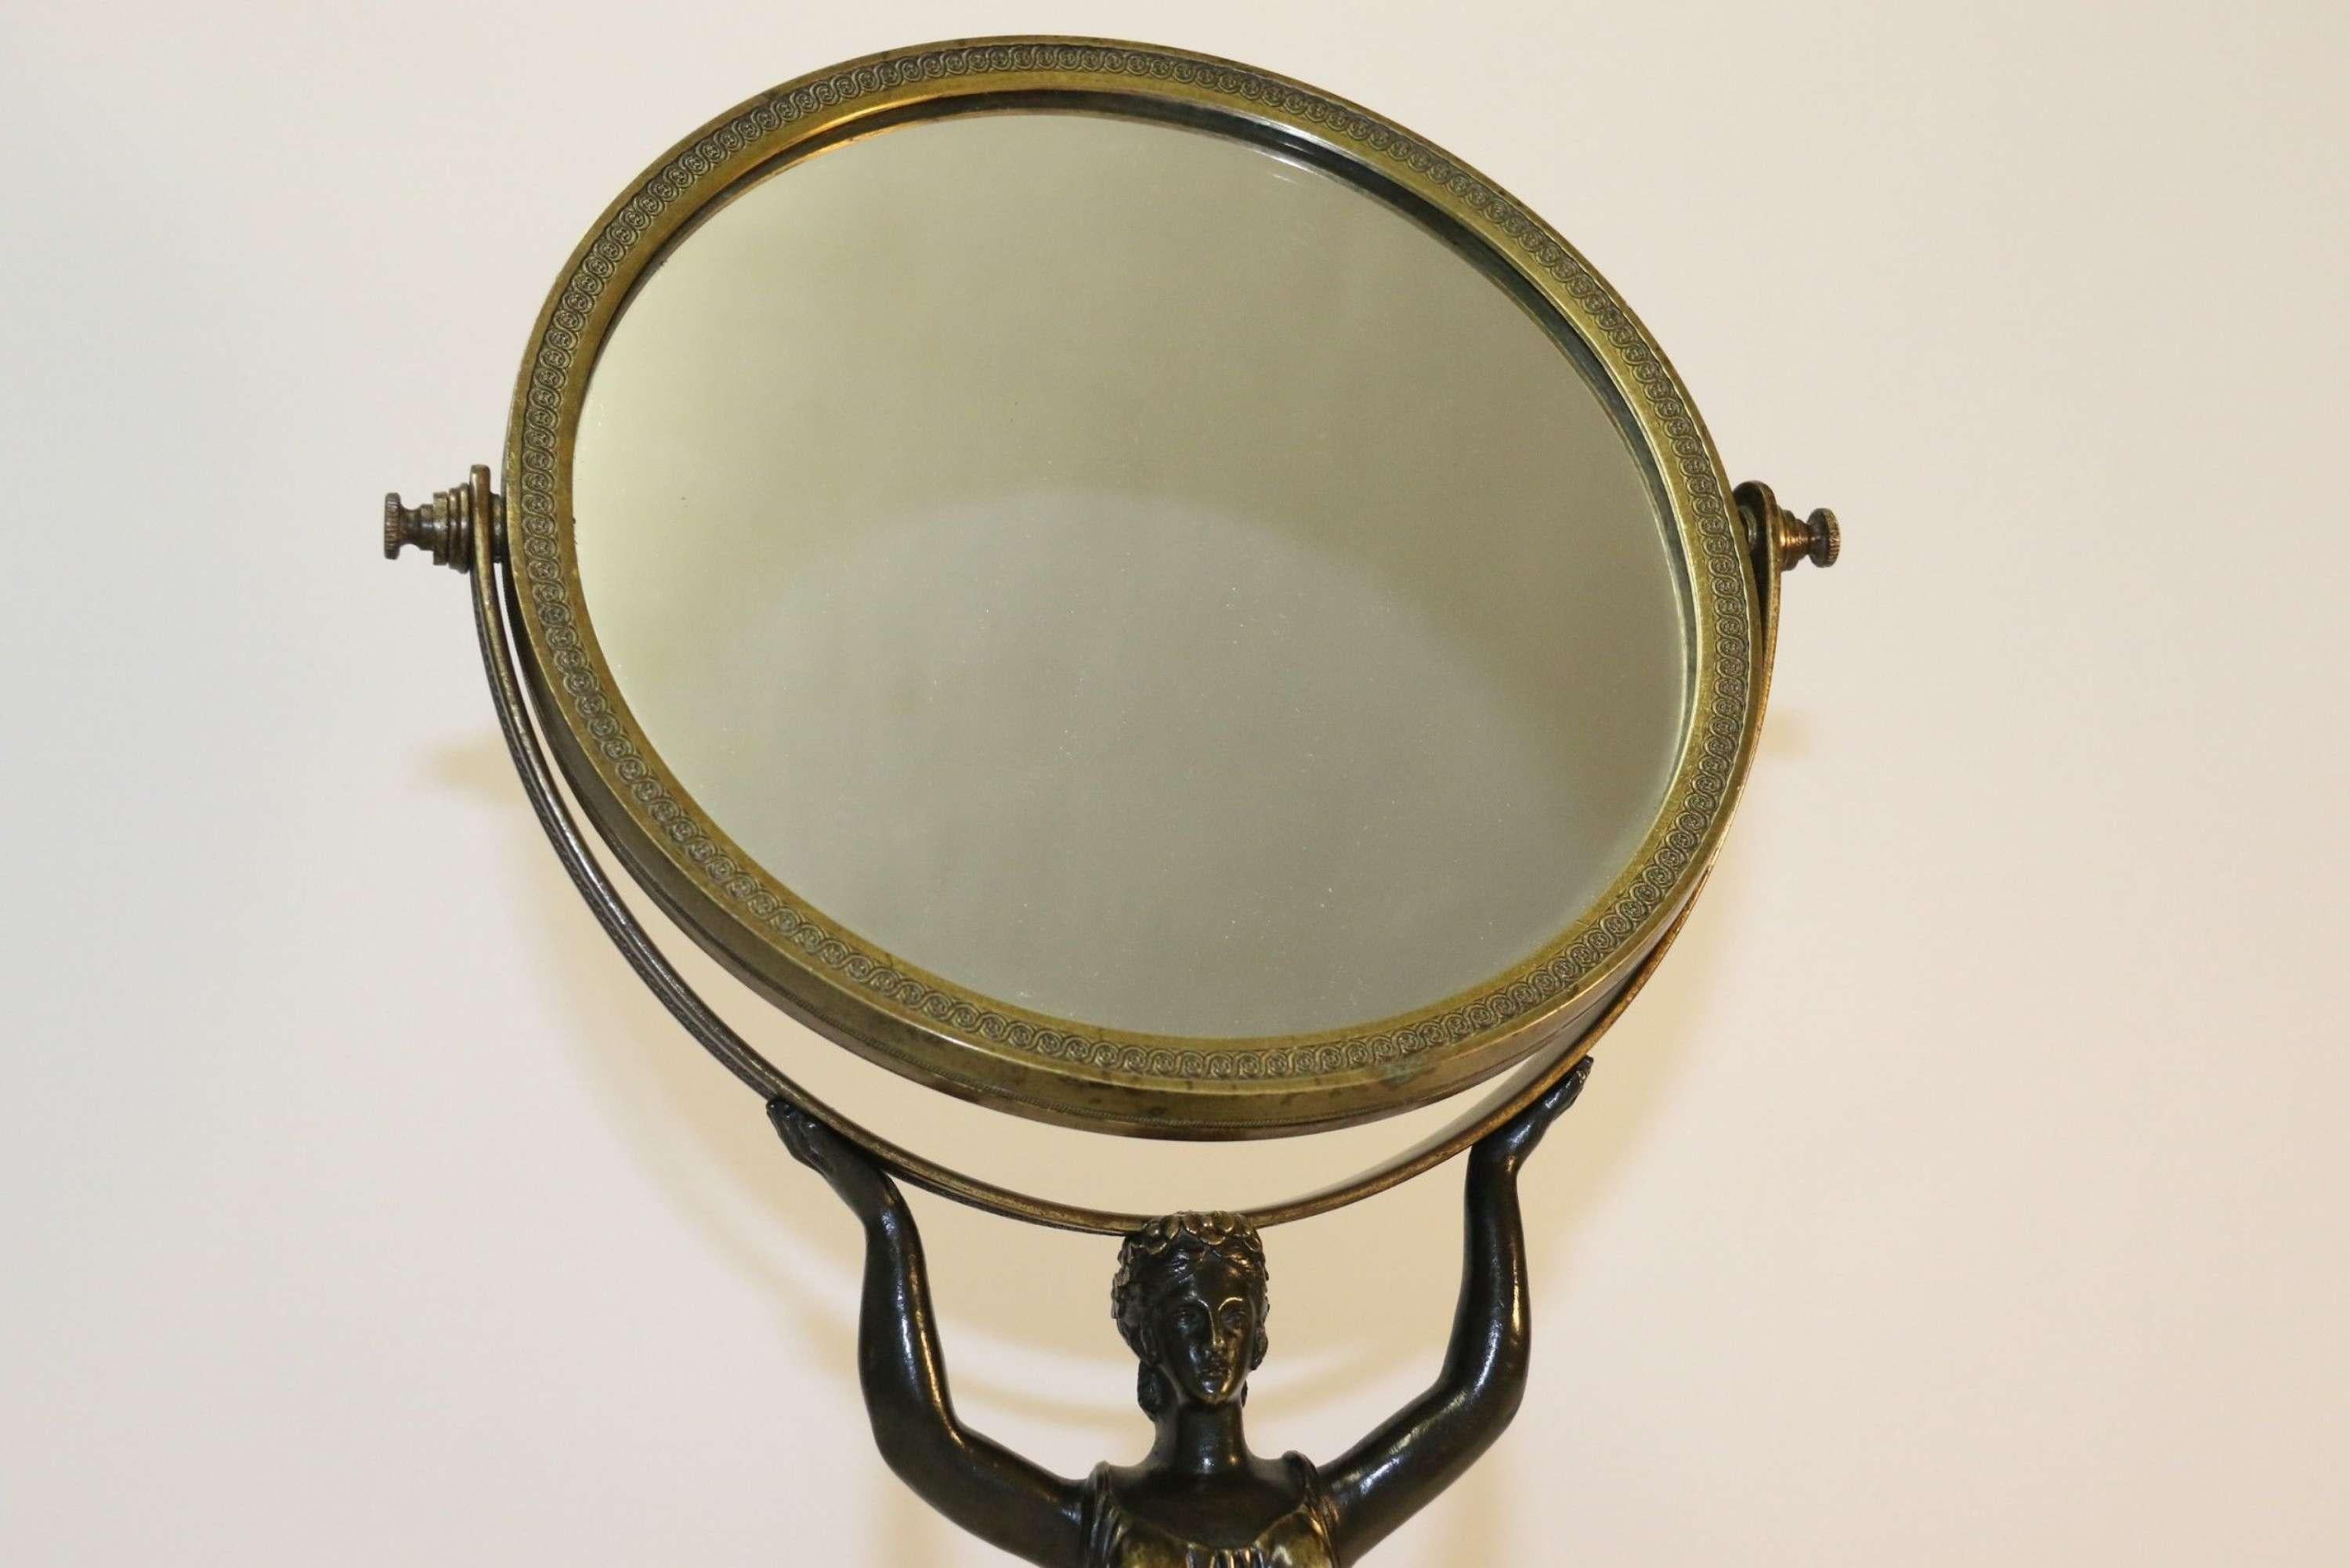 Un superbe miroir français en bronze de la période empire, vers 1820.

Ce miroir à piédestal réglable en bronze français de la période empire, superbement détaillé, est destiné à être utilisé sur une coiffeuse ou une commode. Il date d'environ